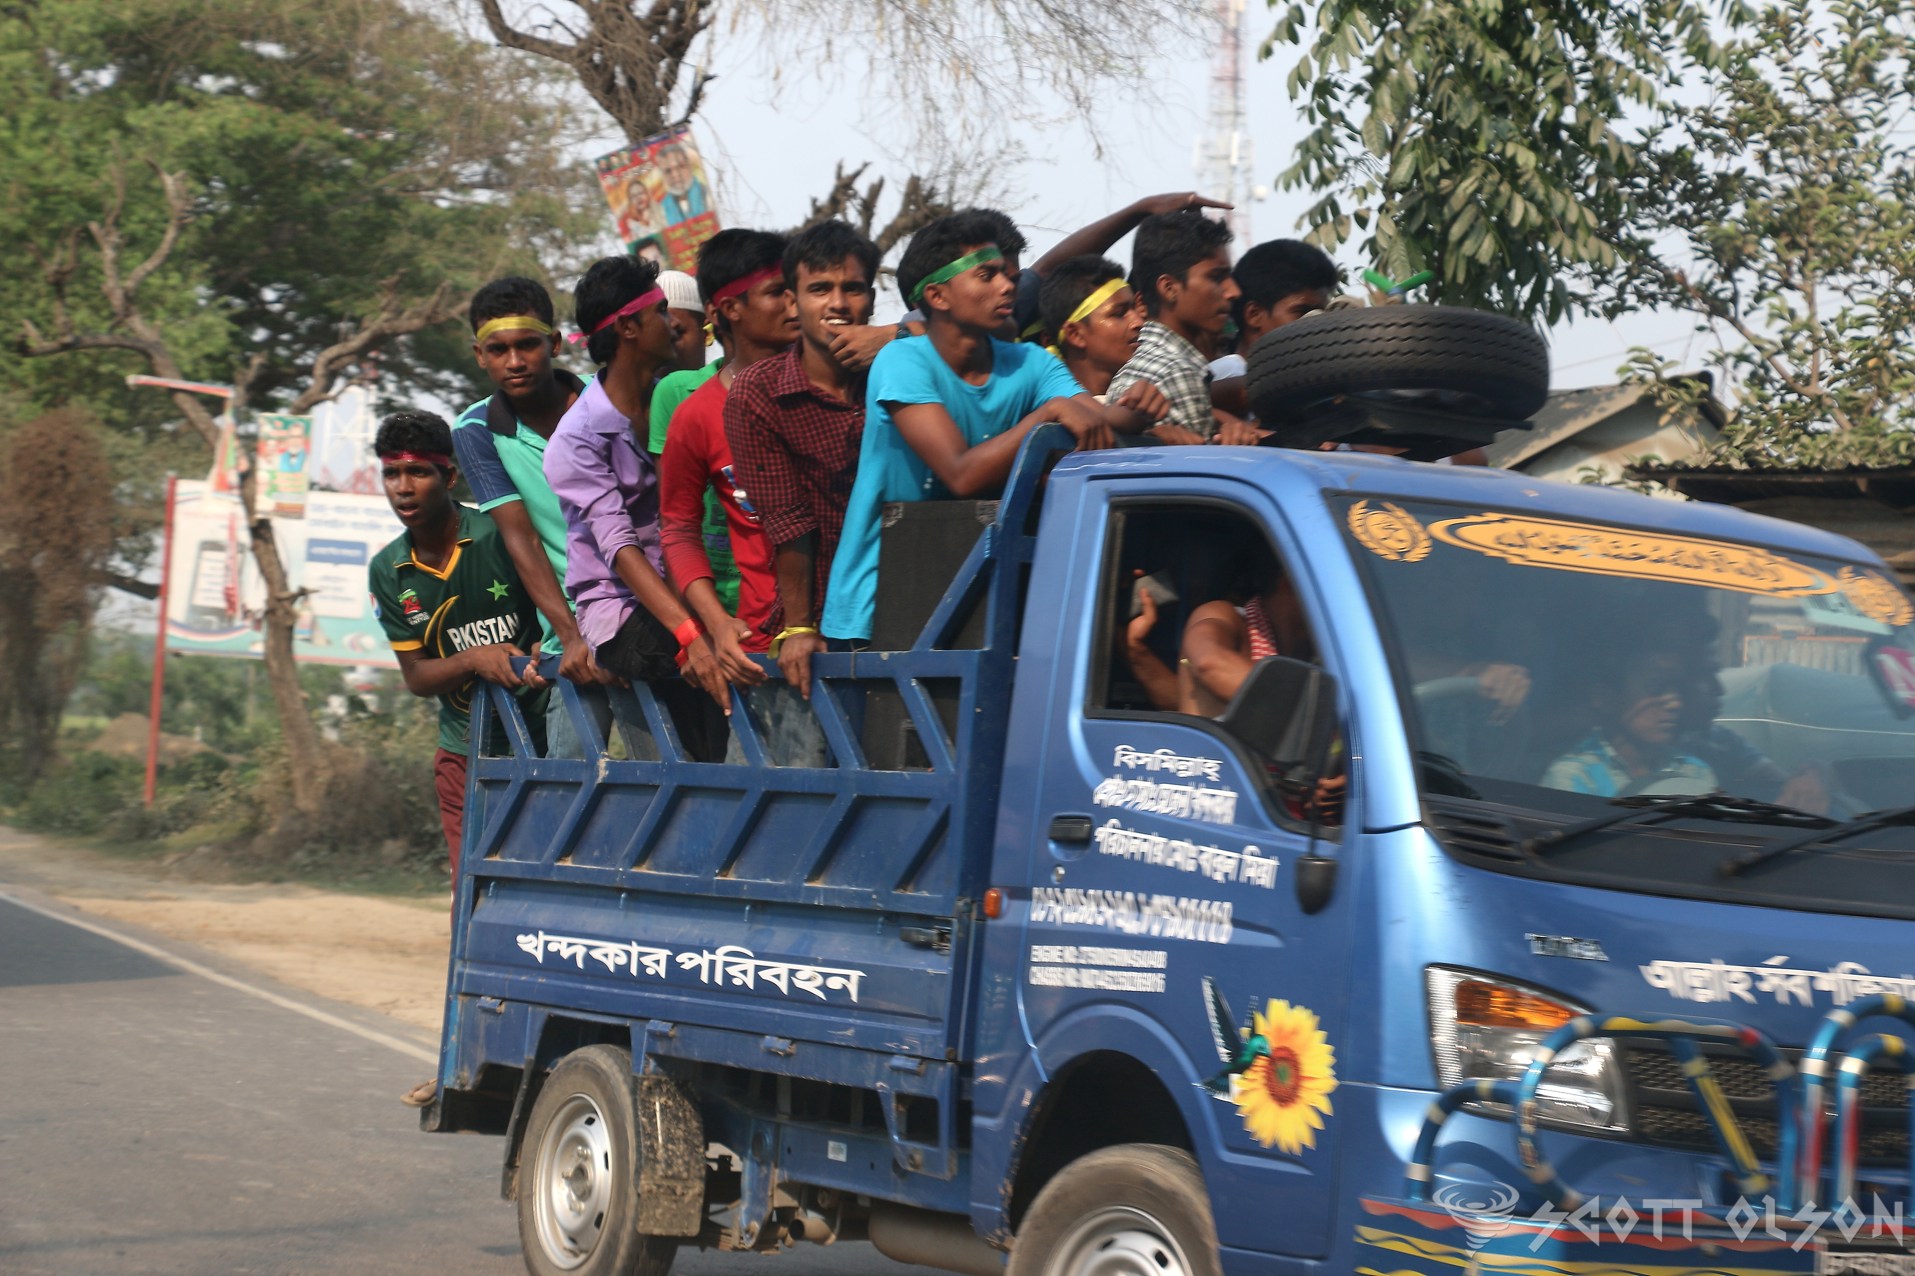 guys-on-truck-bangladesh-political-rally